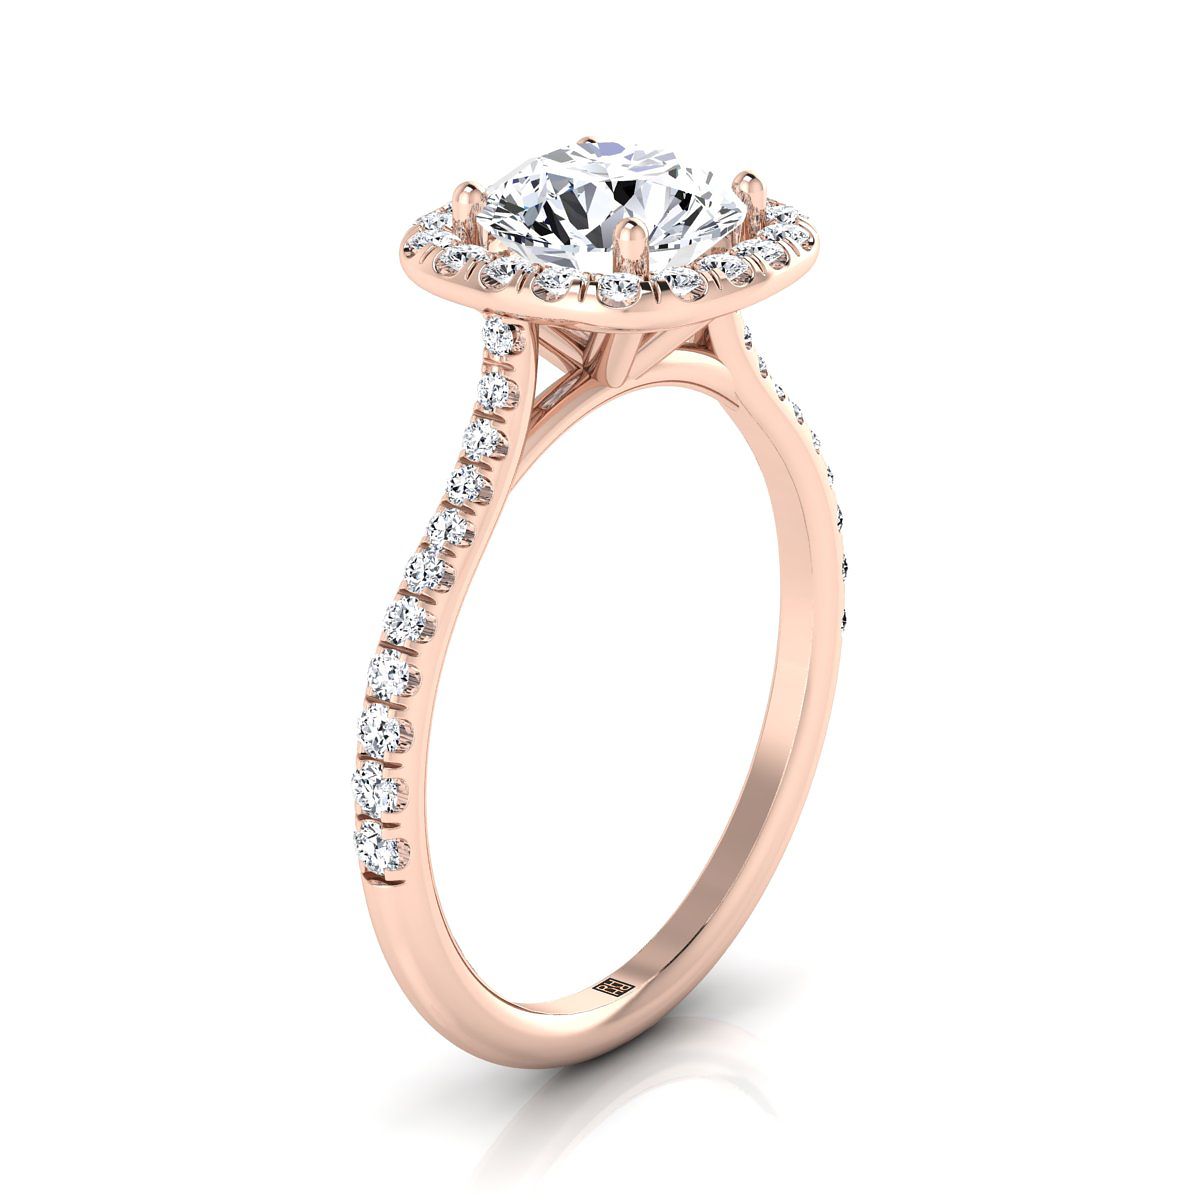 14K Rose Gold Round Brilliant Aquamarine Shared Prong Diamond Halo Engagement Ring -3/8ctw